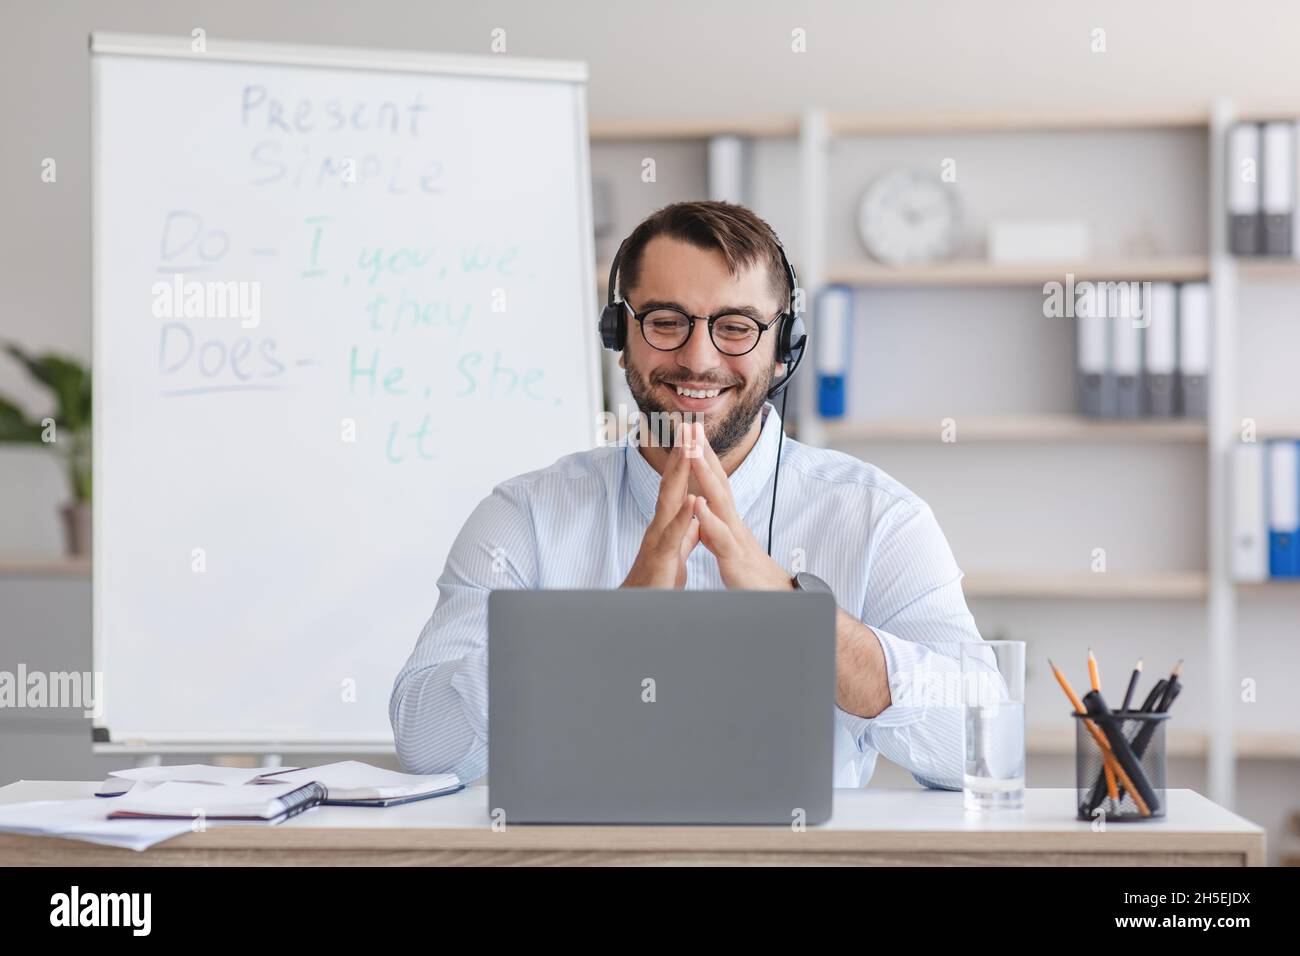 Joyeux homme caucasien mature professeur dans des lunettes avec tableau avec des règles, des gestes, regarde l'ordinateur portable Banque D'Images